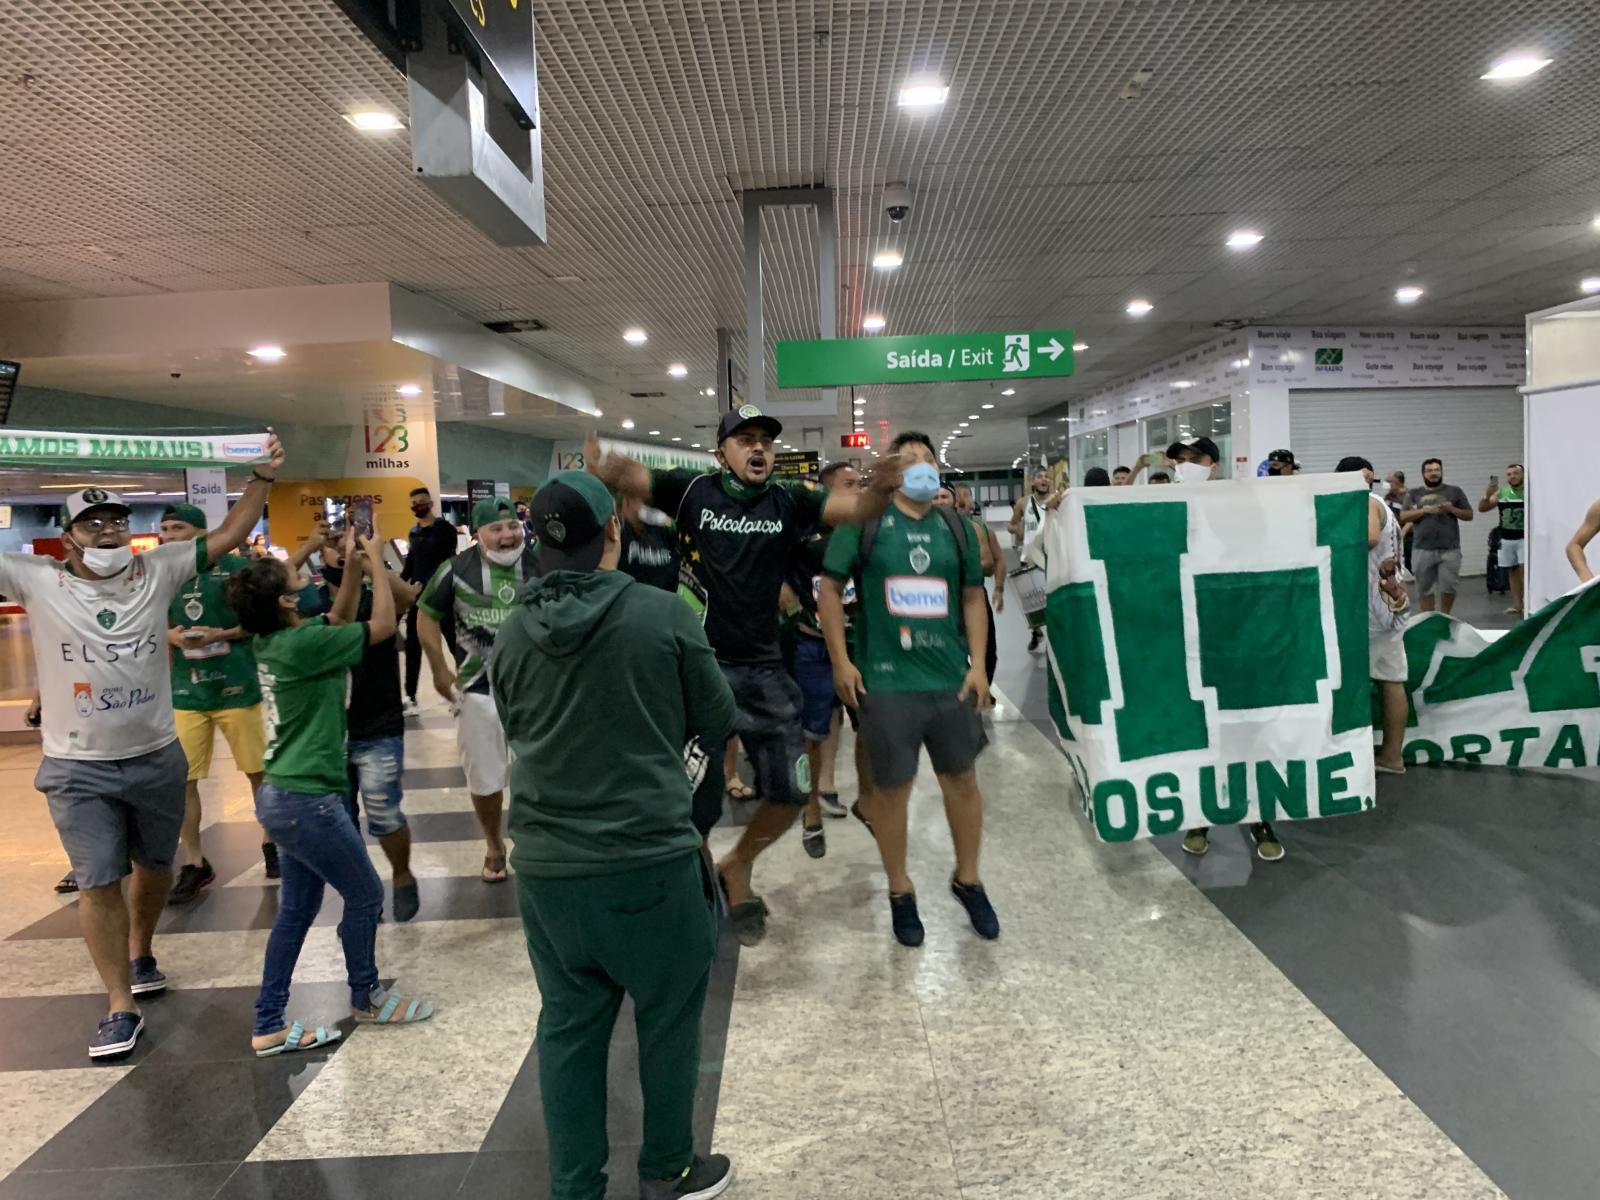 Empurrados por festa da torcida, Manaus FC embarca rumo a São Paulo